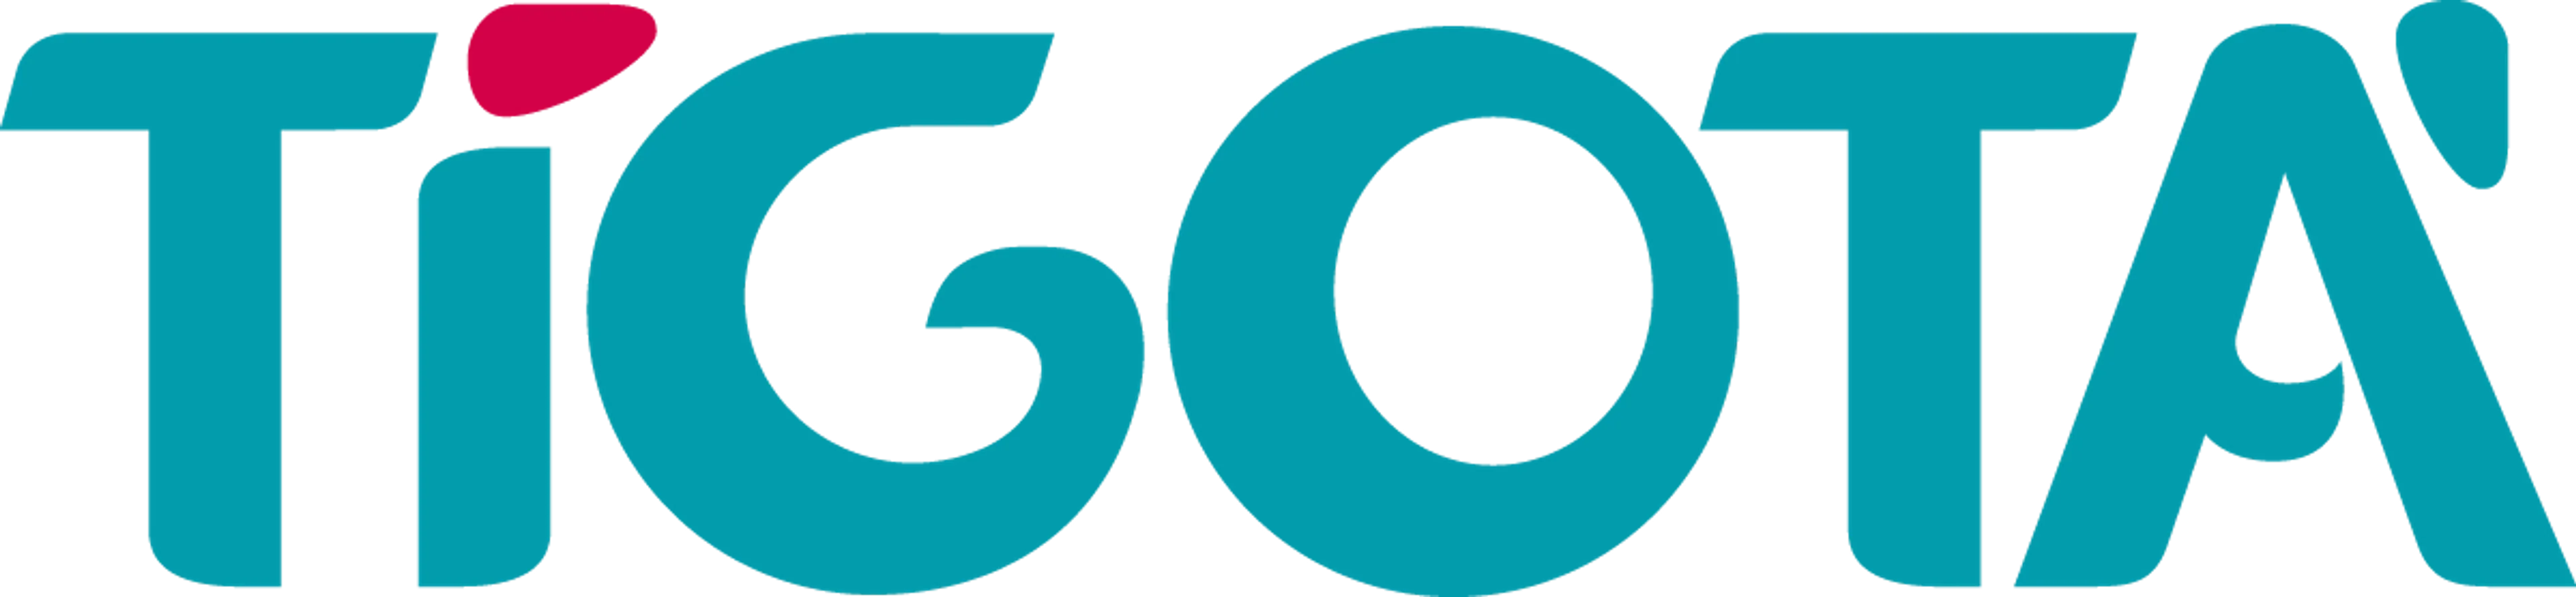 TIGOTÀ logo